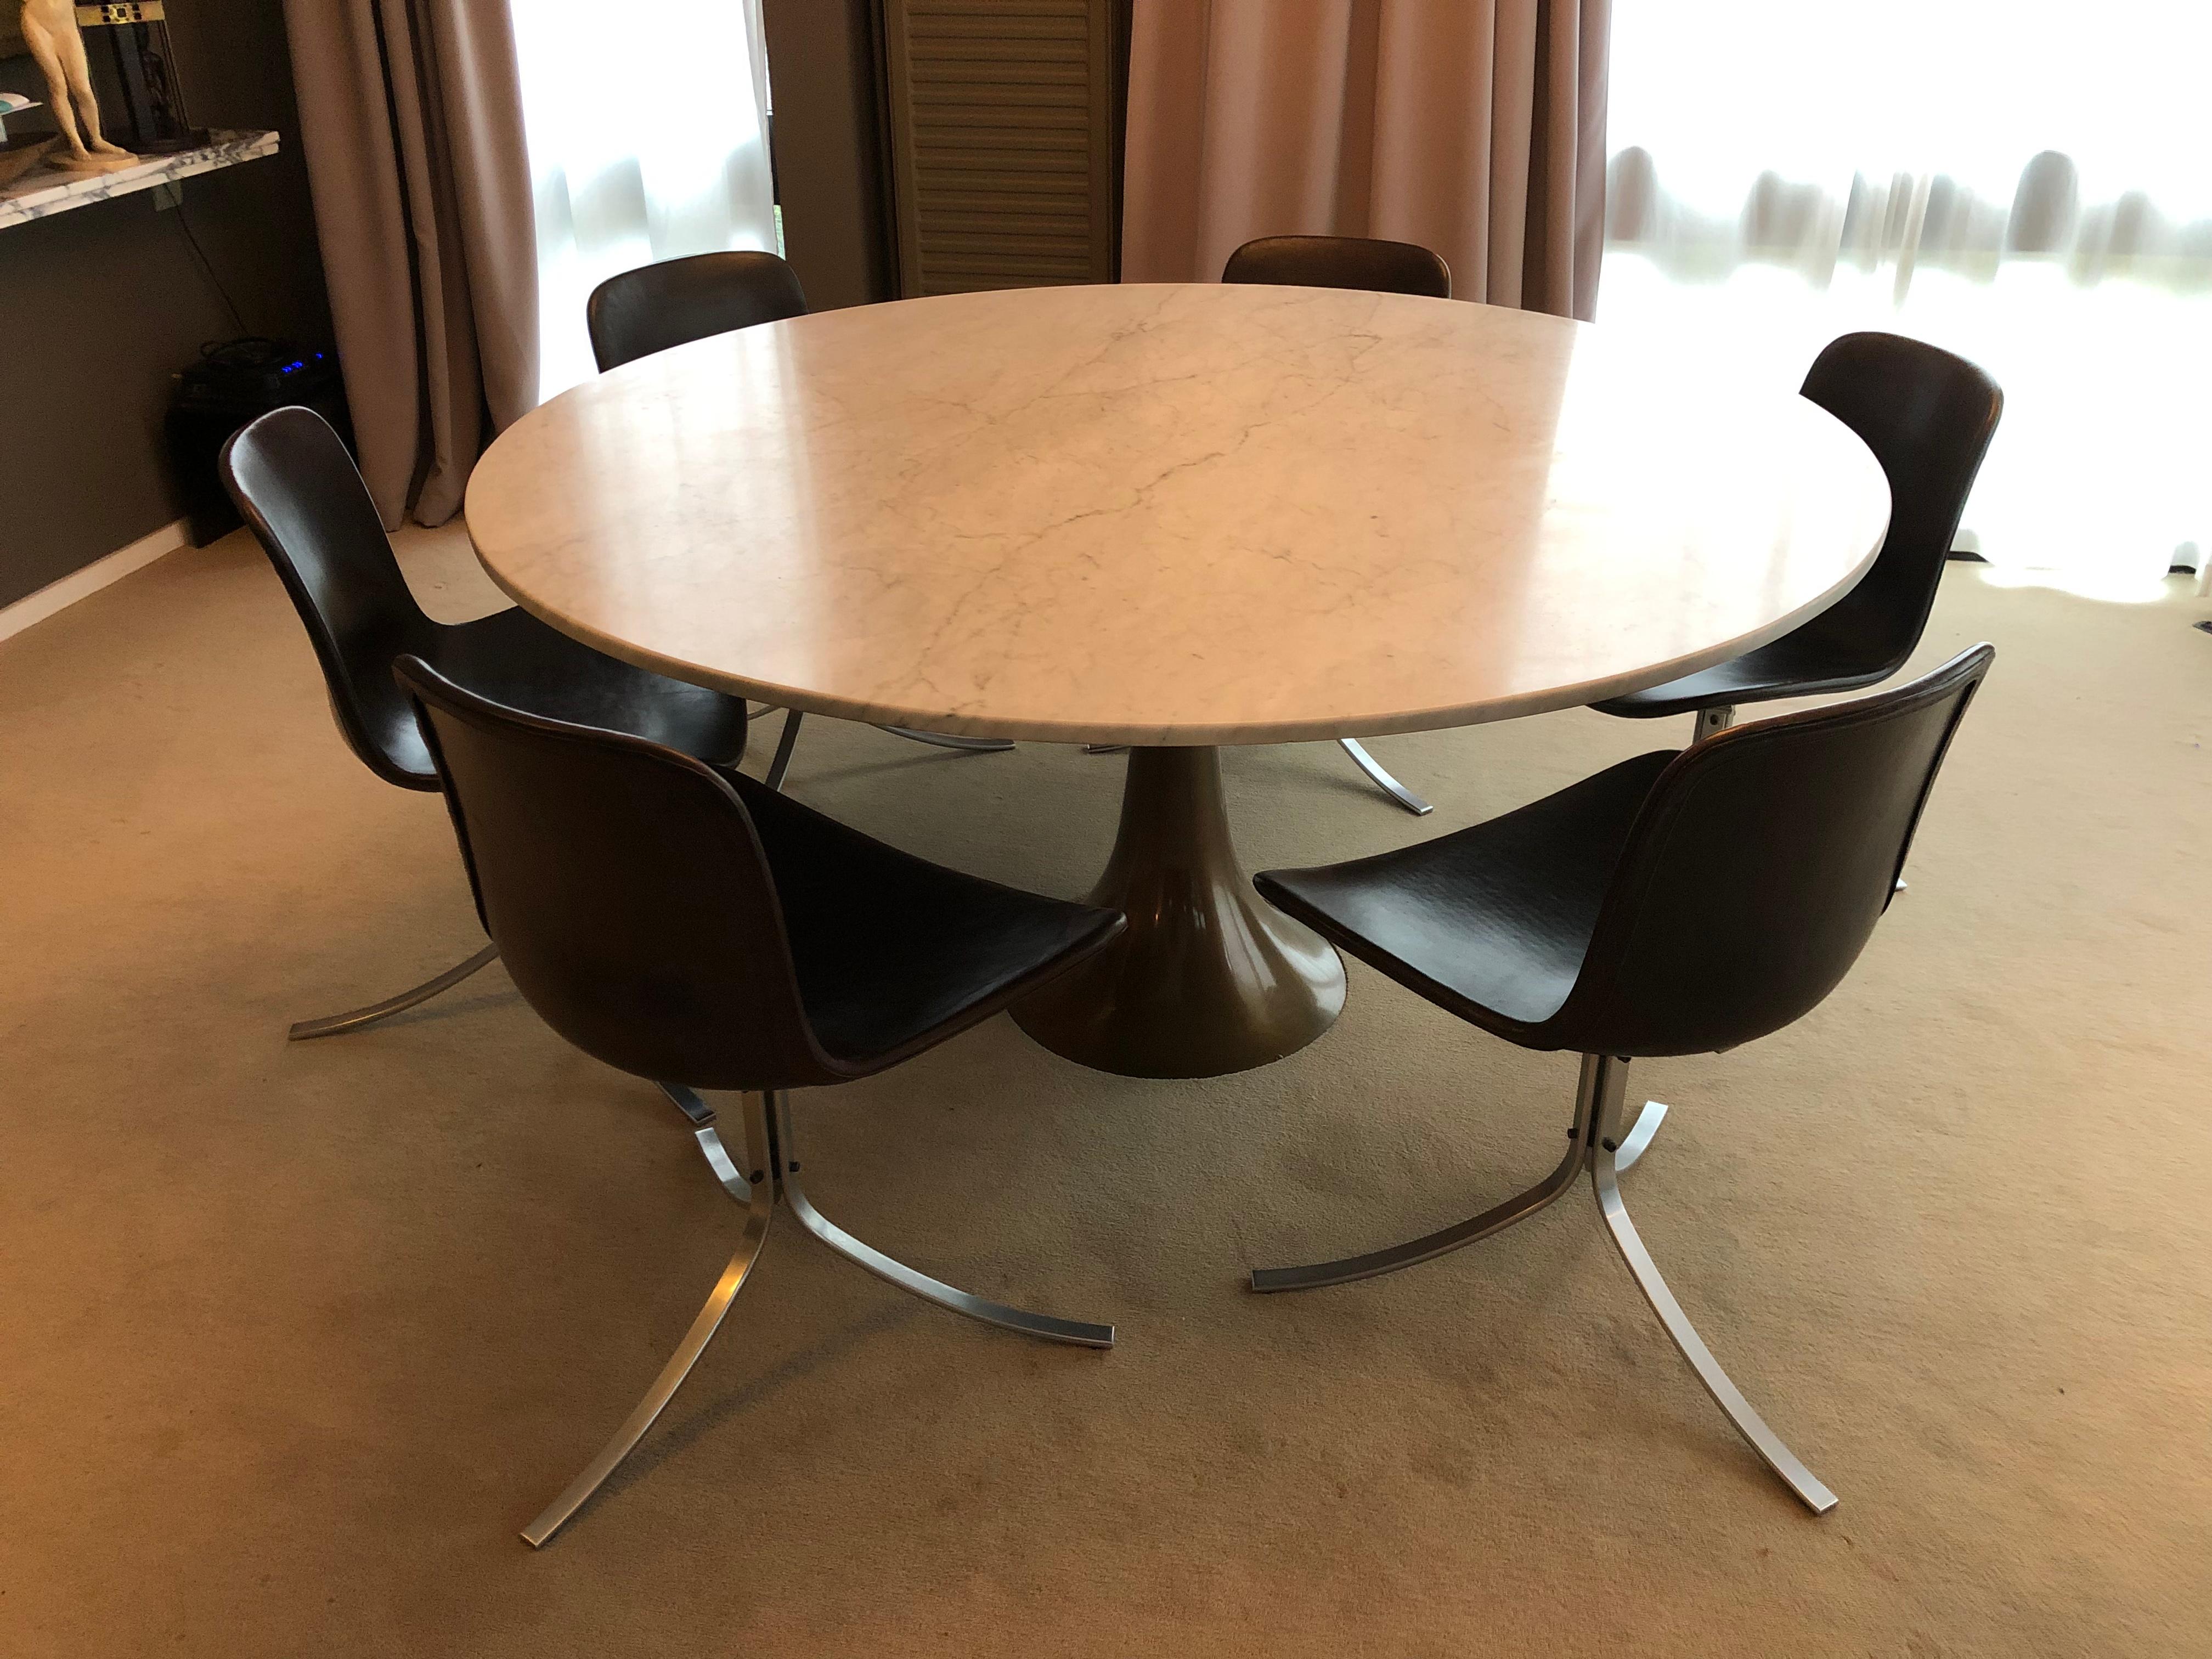 Suite de 6 chaises de salle à manger modèle PK 9 conçue par Poul Kjaerholm en 1961 pour Kold Christensen.
C'est une première édition en bon état.
Ensemble très rare réalisé par l'un des designers danois les plus recherchés.